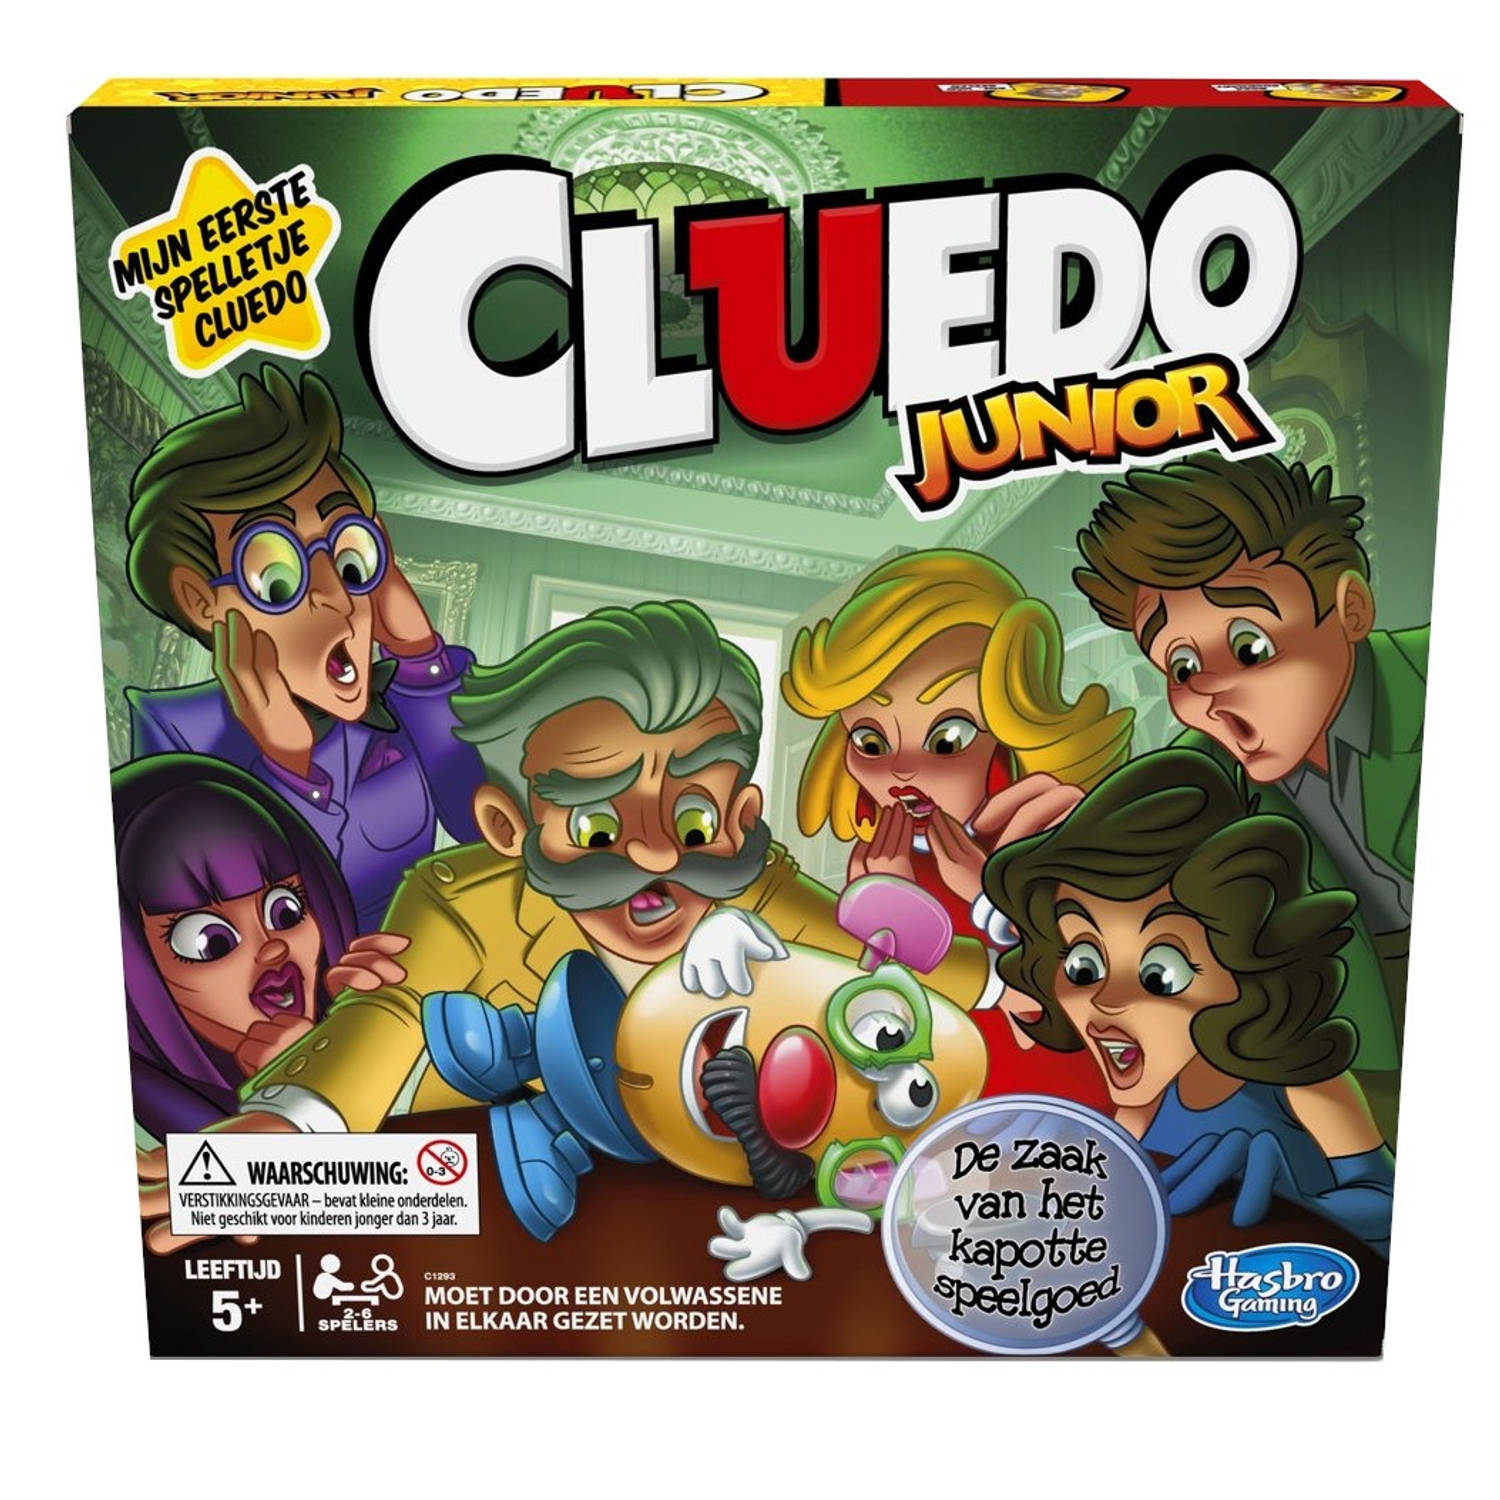 Evalueerbaar Beyond Afwezigheid Hasbro Gaming bordspel Cluedo Junior | Blokker